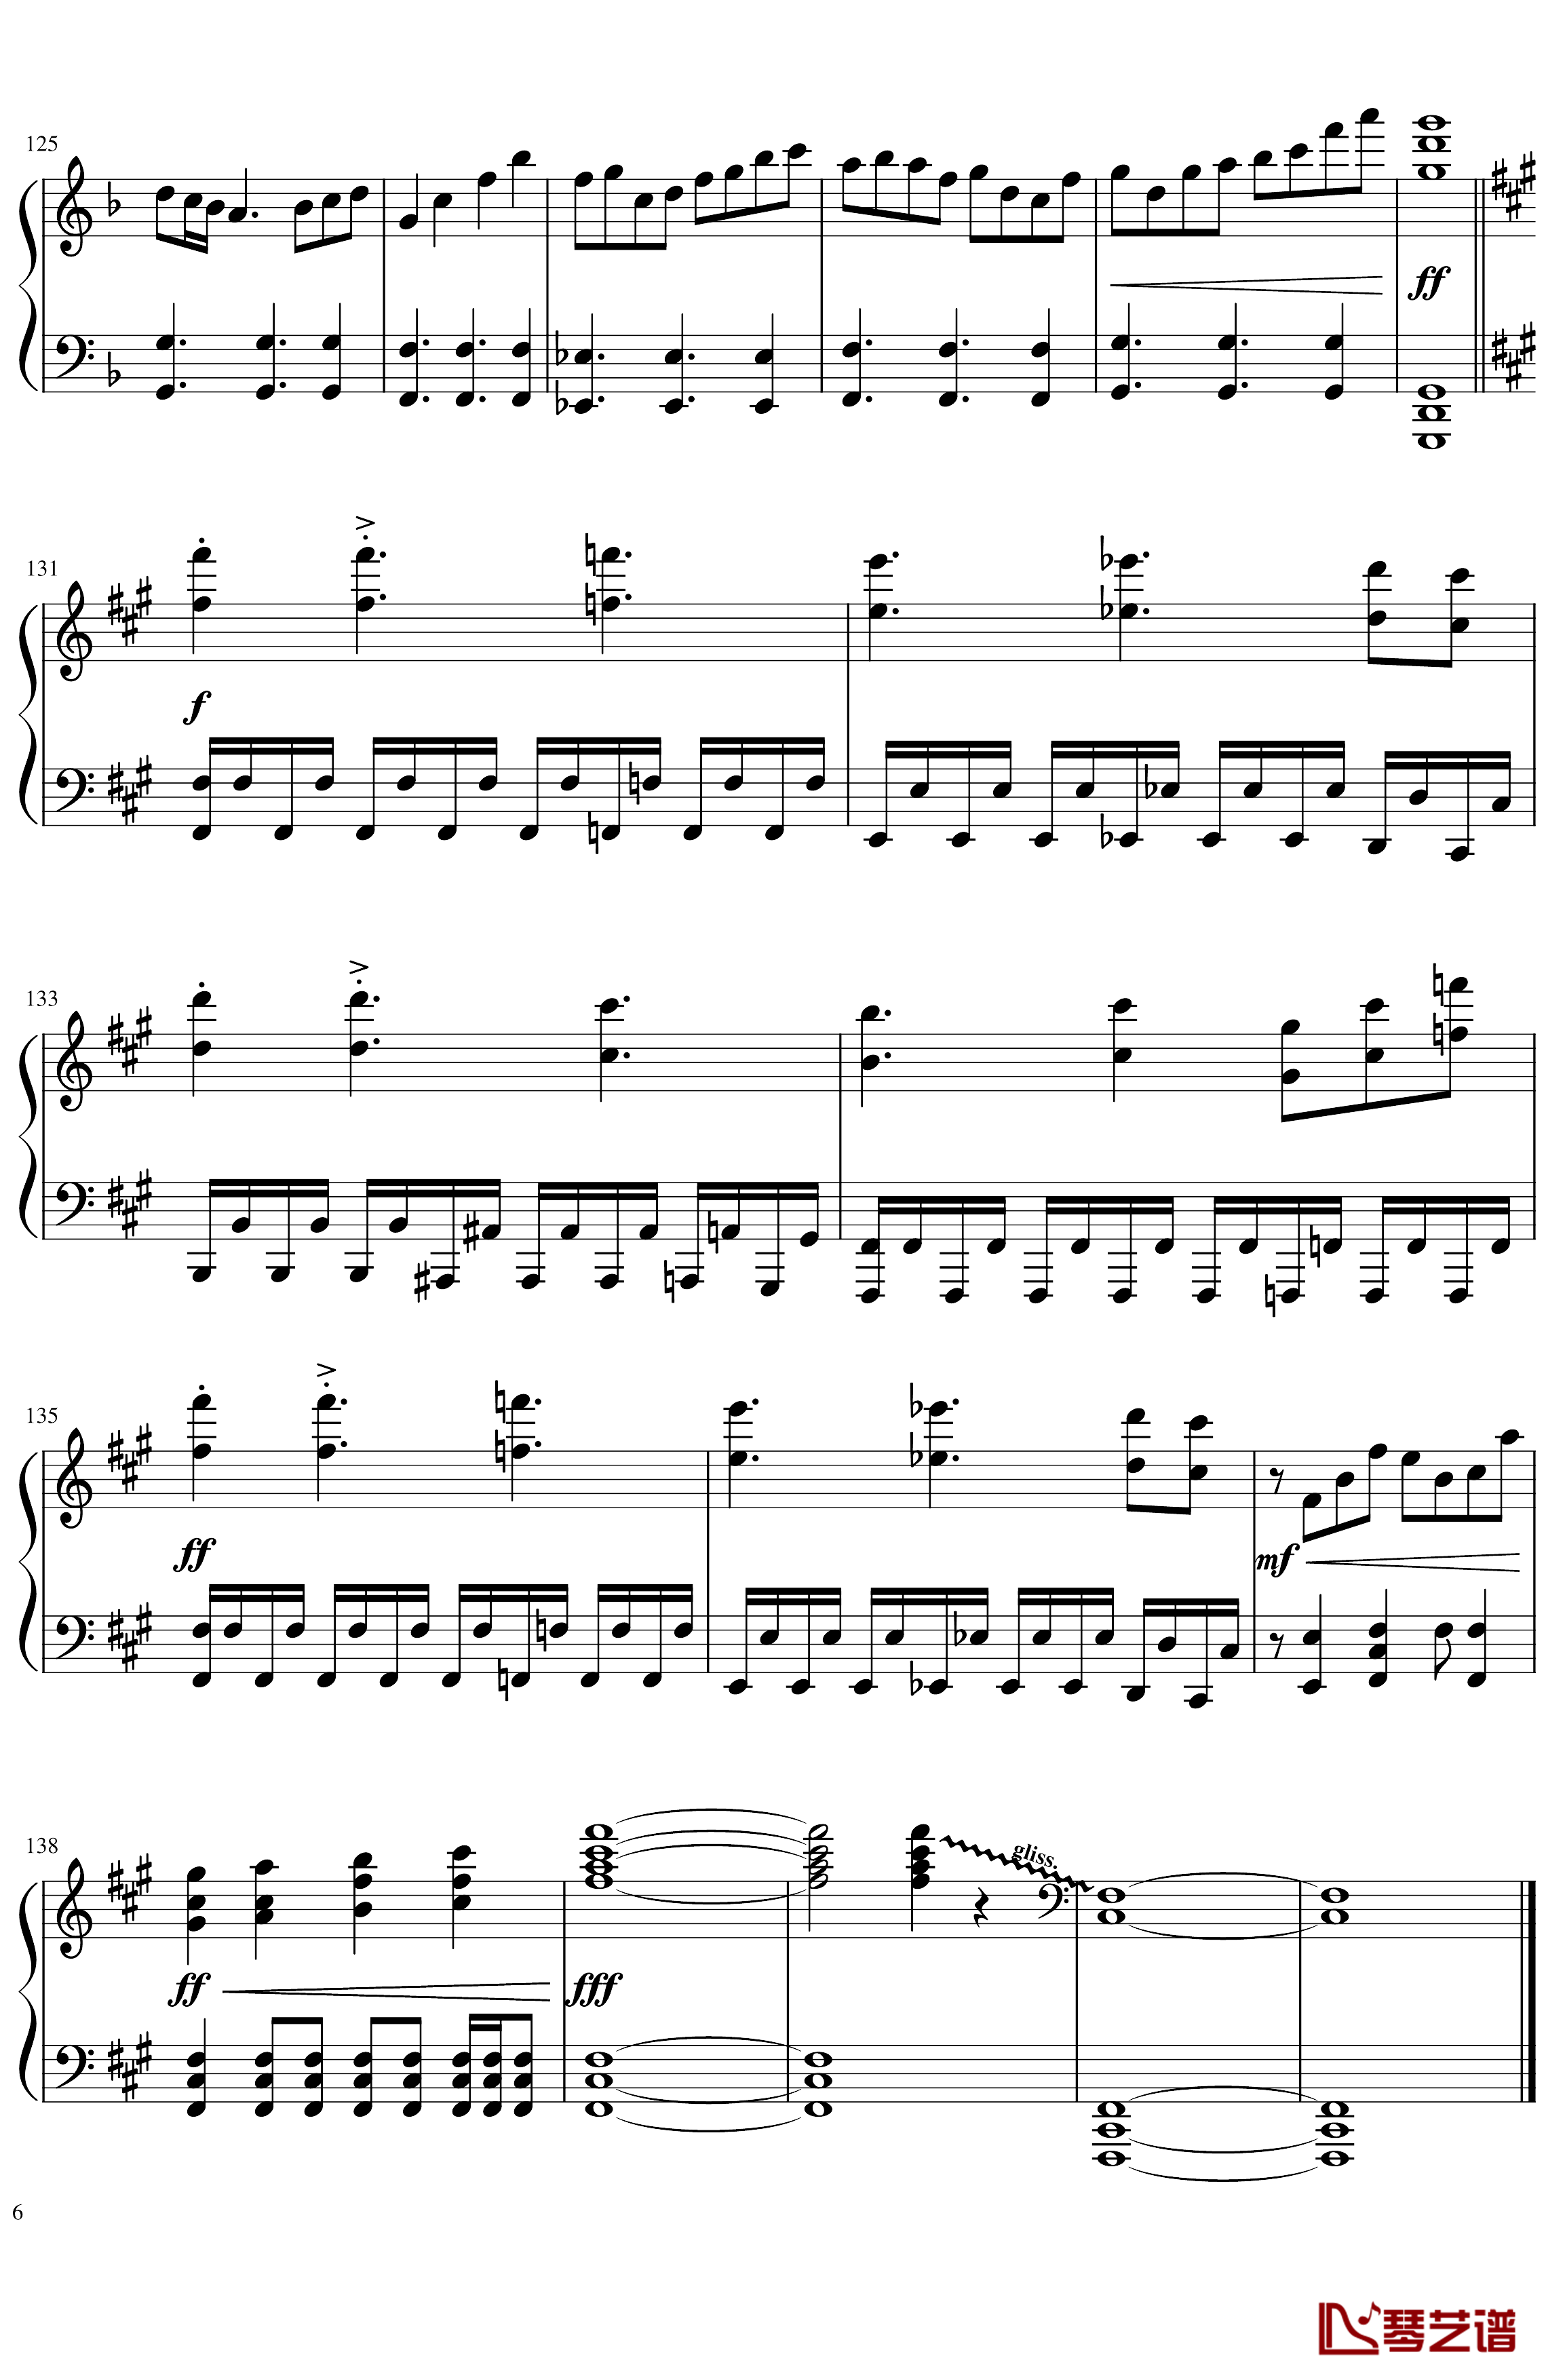 ソロモンの白椿钢琴谱-交响乐转钢琴版-碧蓝航线6